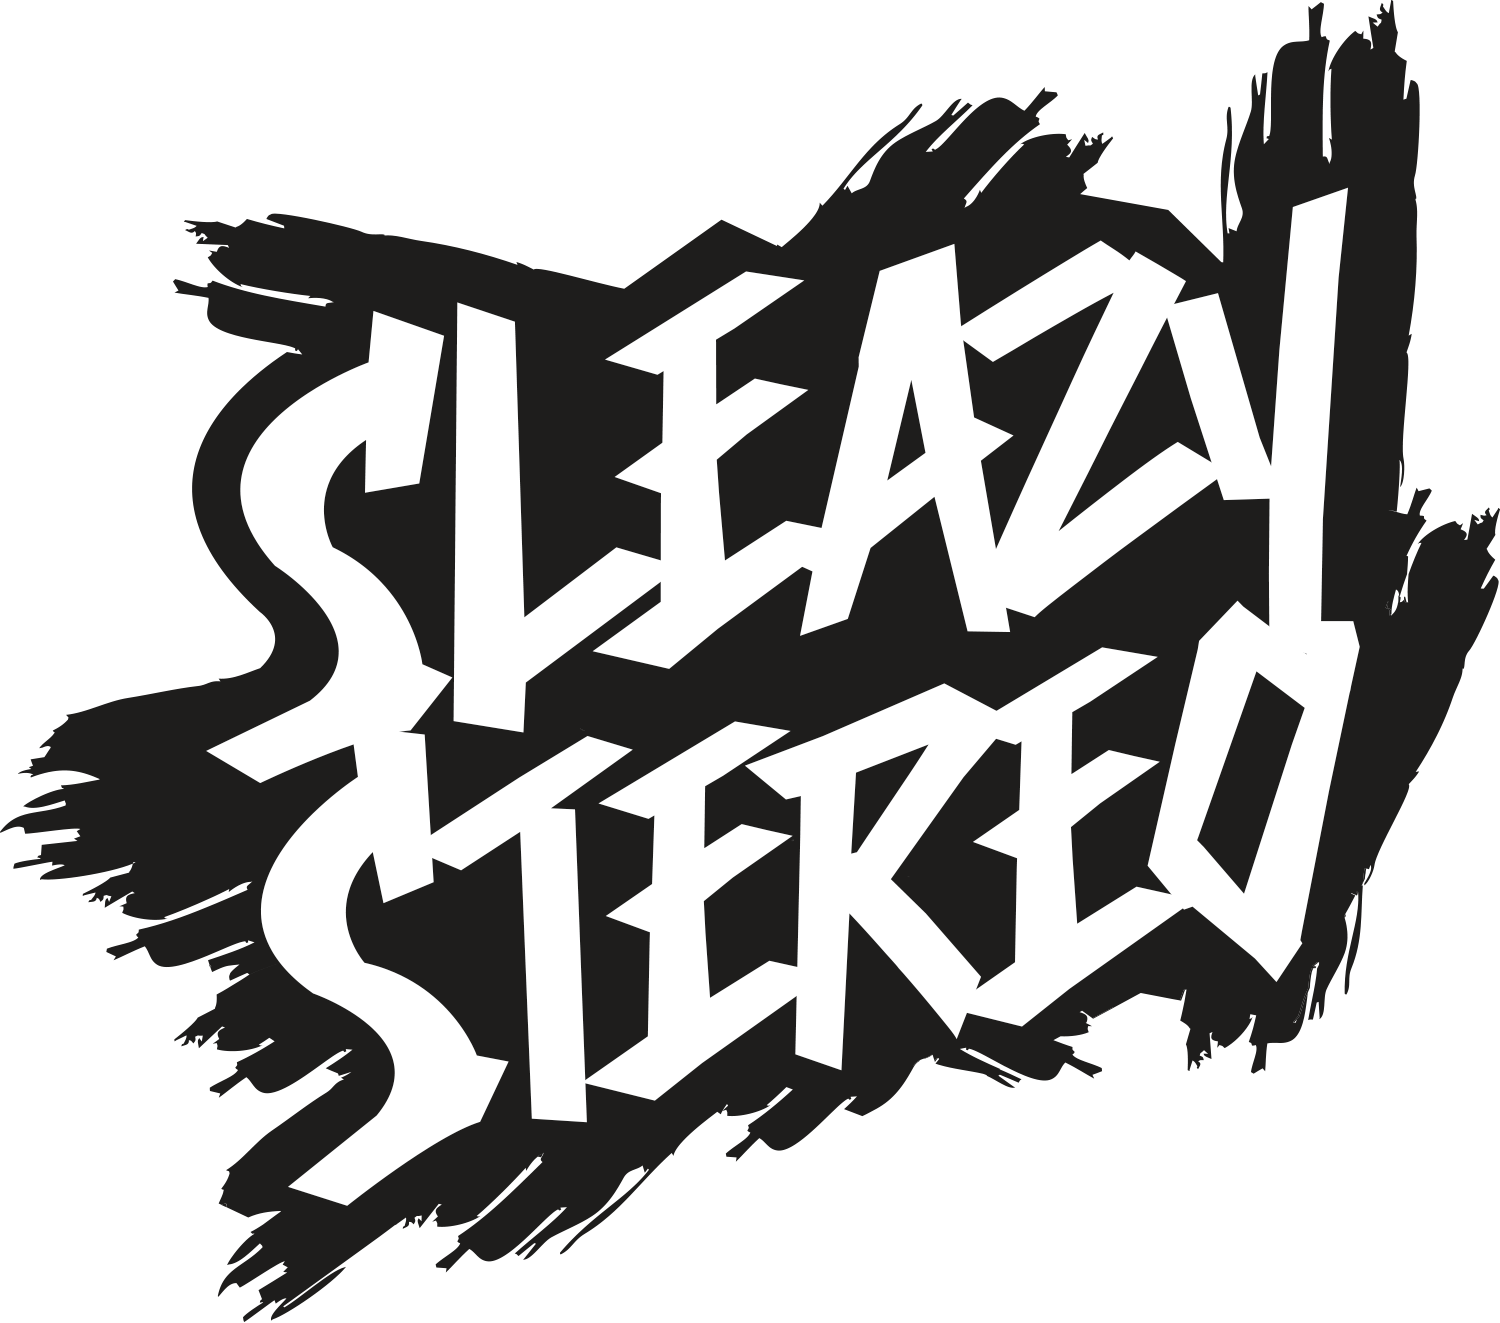 Sleazy Stereo